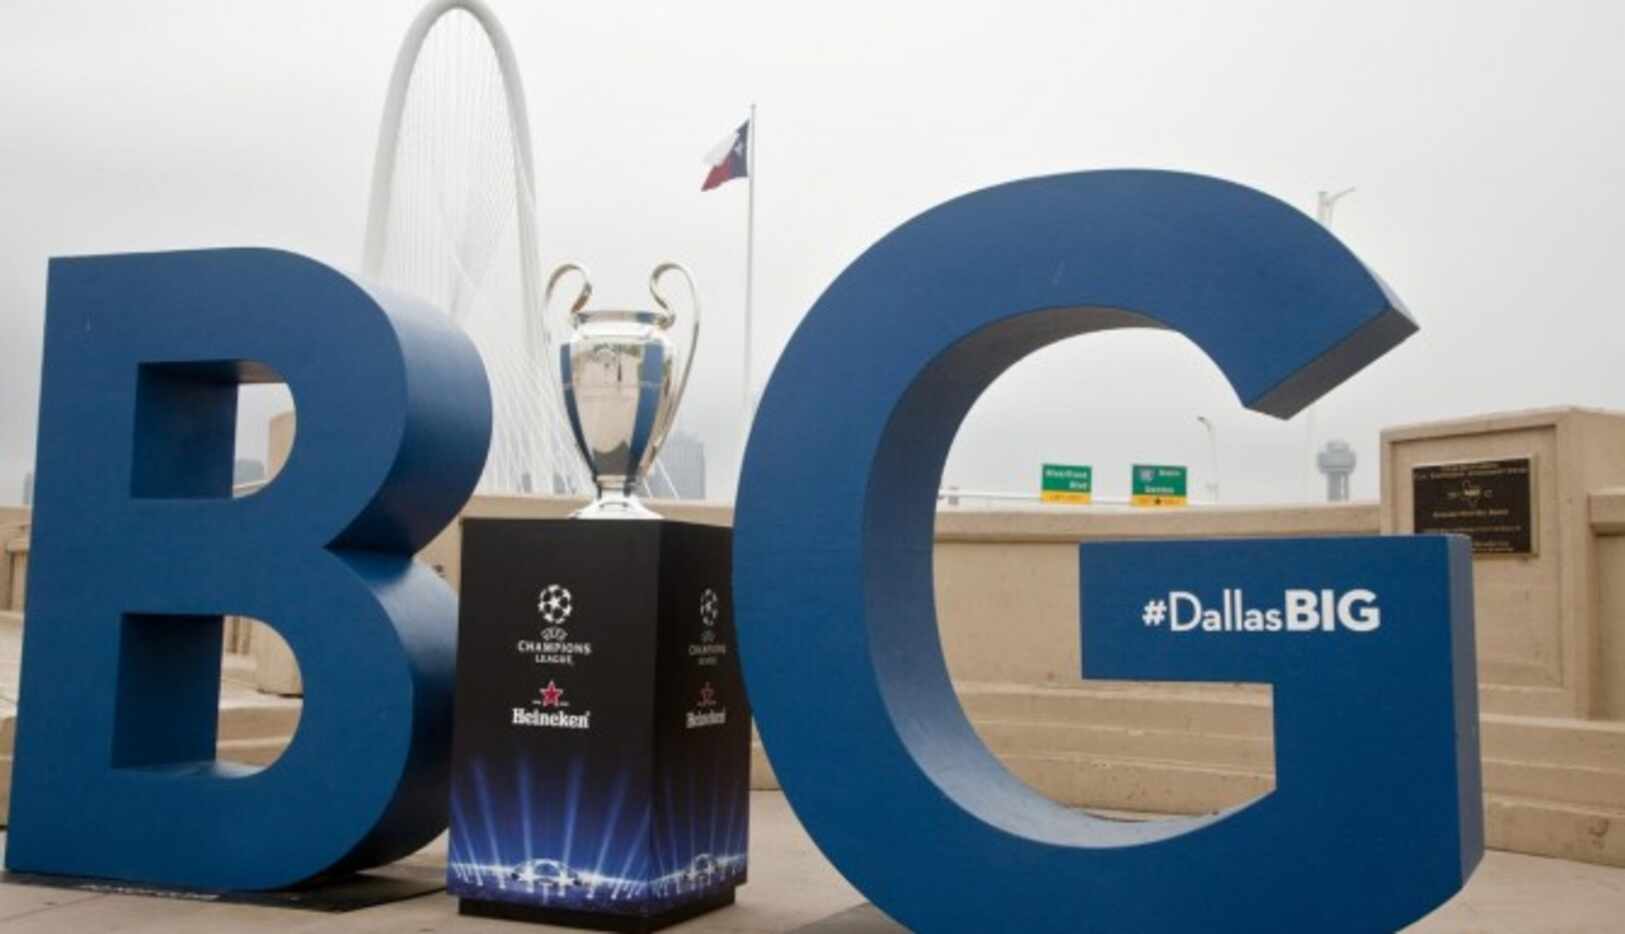 El trofeo de la Champions visita Dallas este fin de semana. (GETTY IMAGES/PETER LARSEN)
